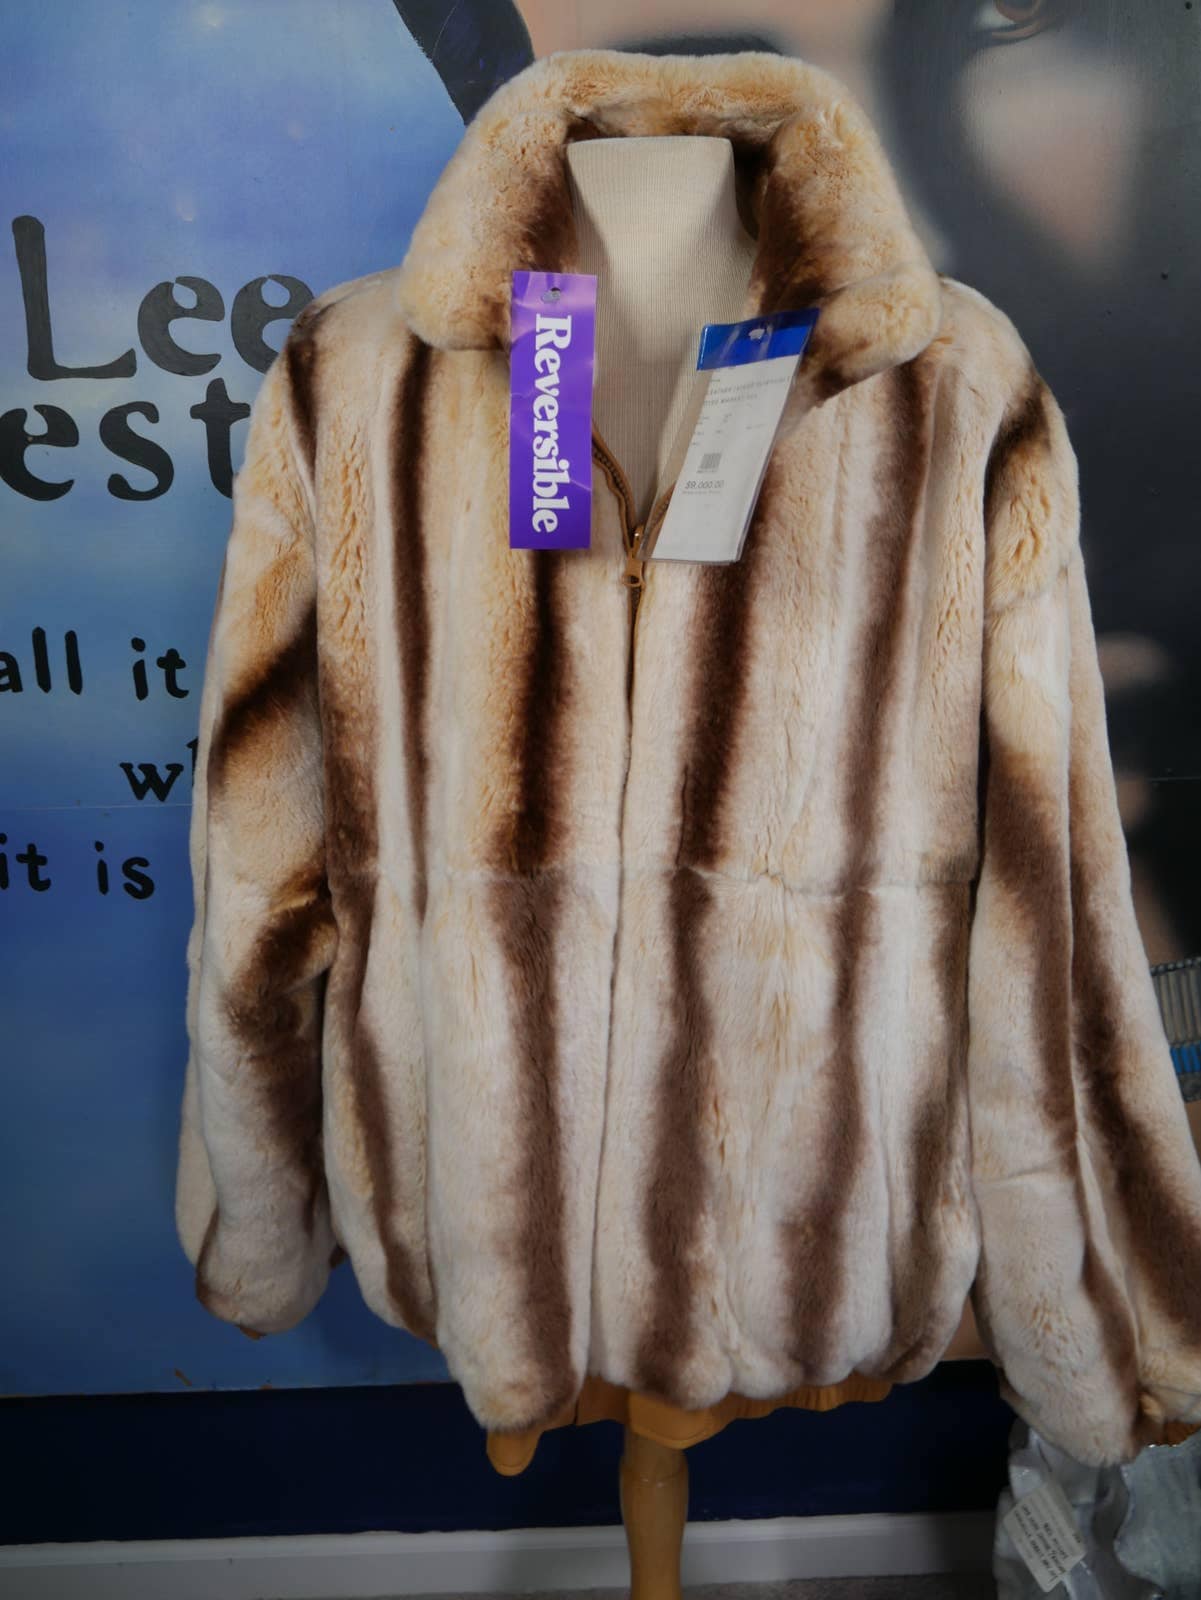 Rex Rabbit Fur Long Women's Coat. Oil Green Ultra Soft / Rabbit Jacket Real  Fur Coat Rabbit Fur Coat / Overcoat, Real Fur Coat, Winter 220 